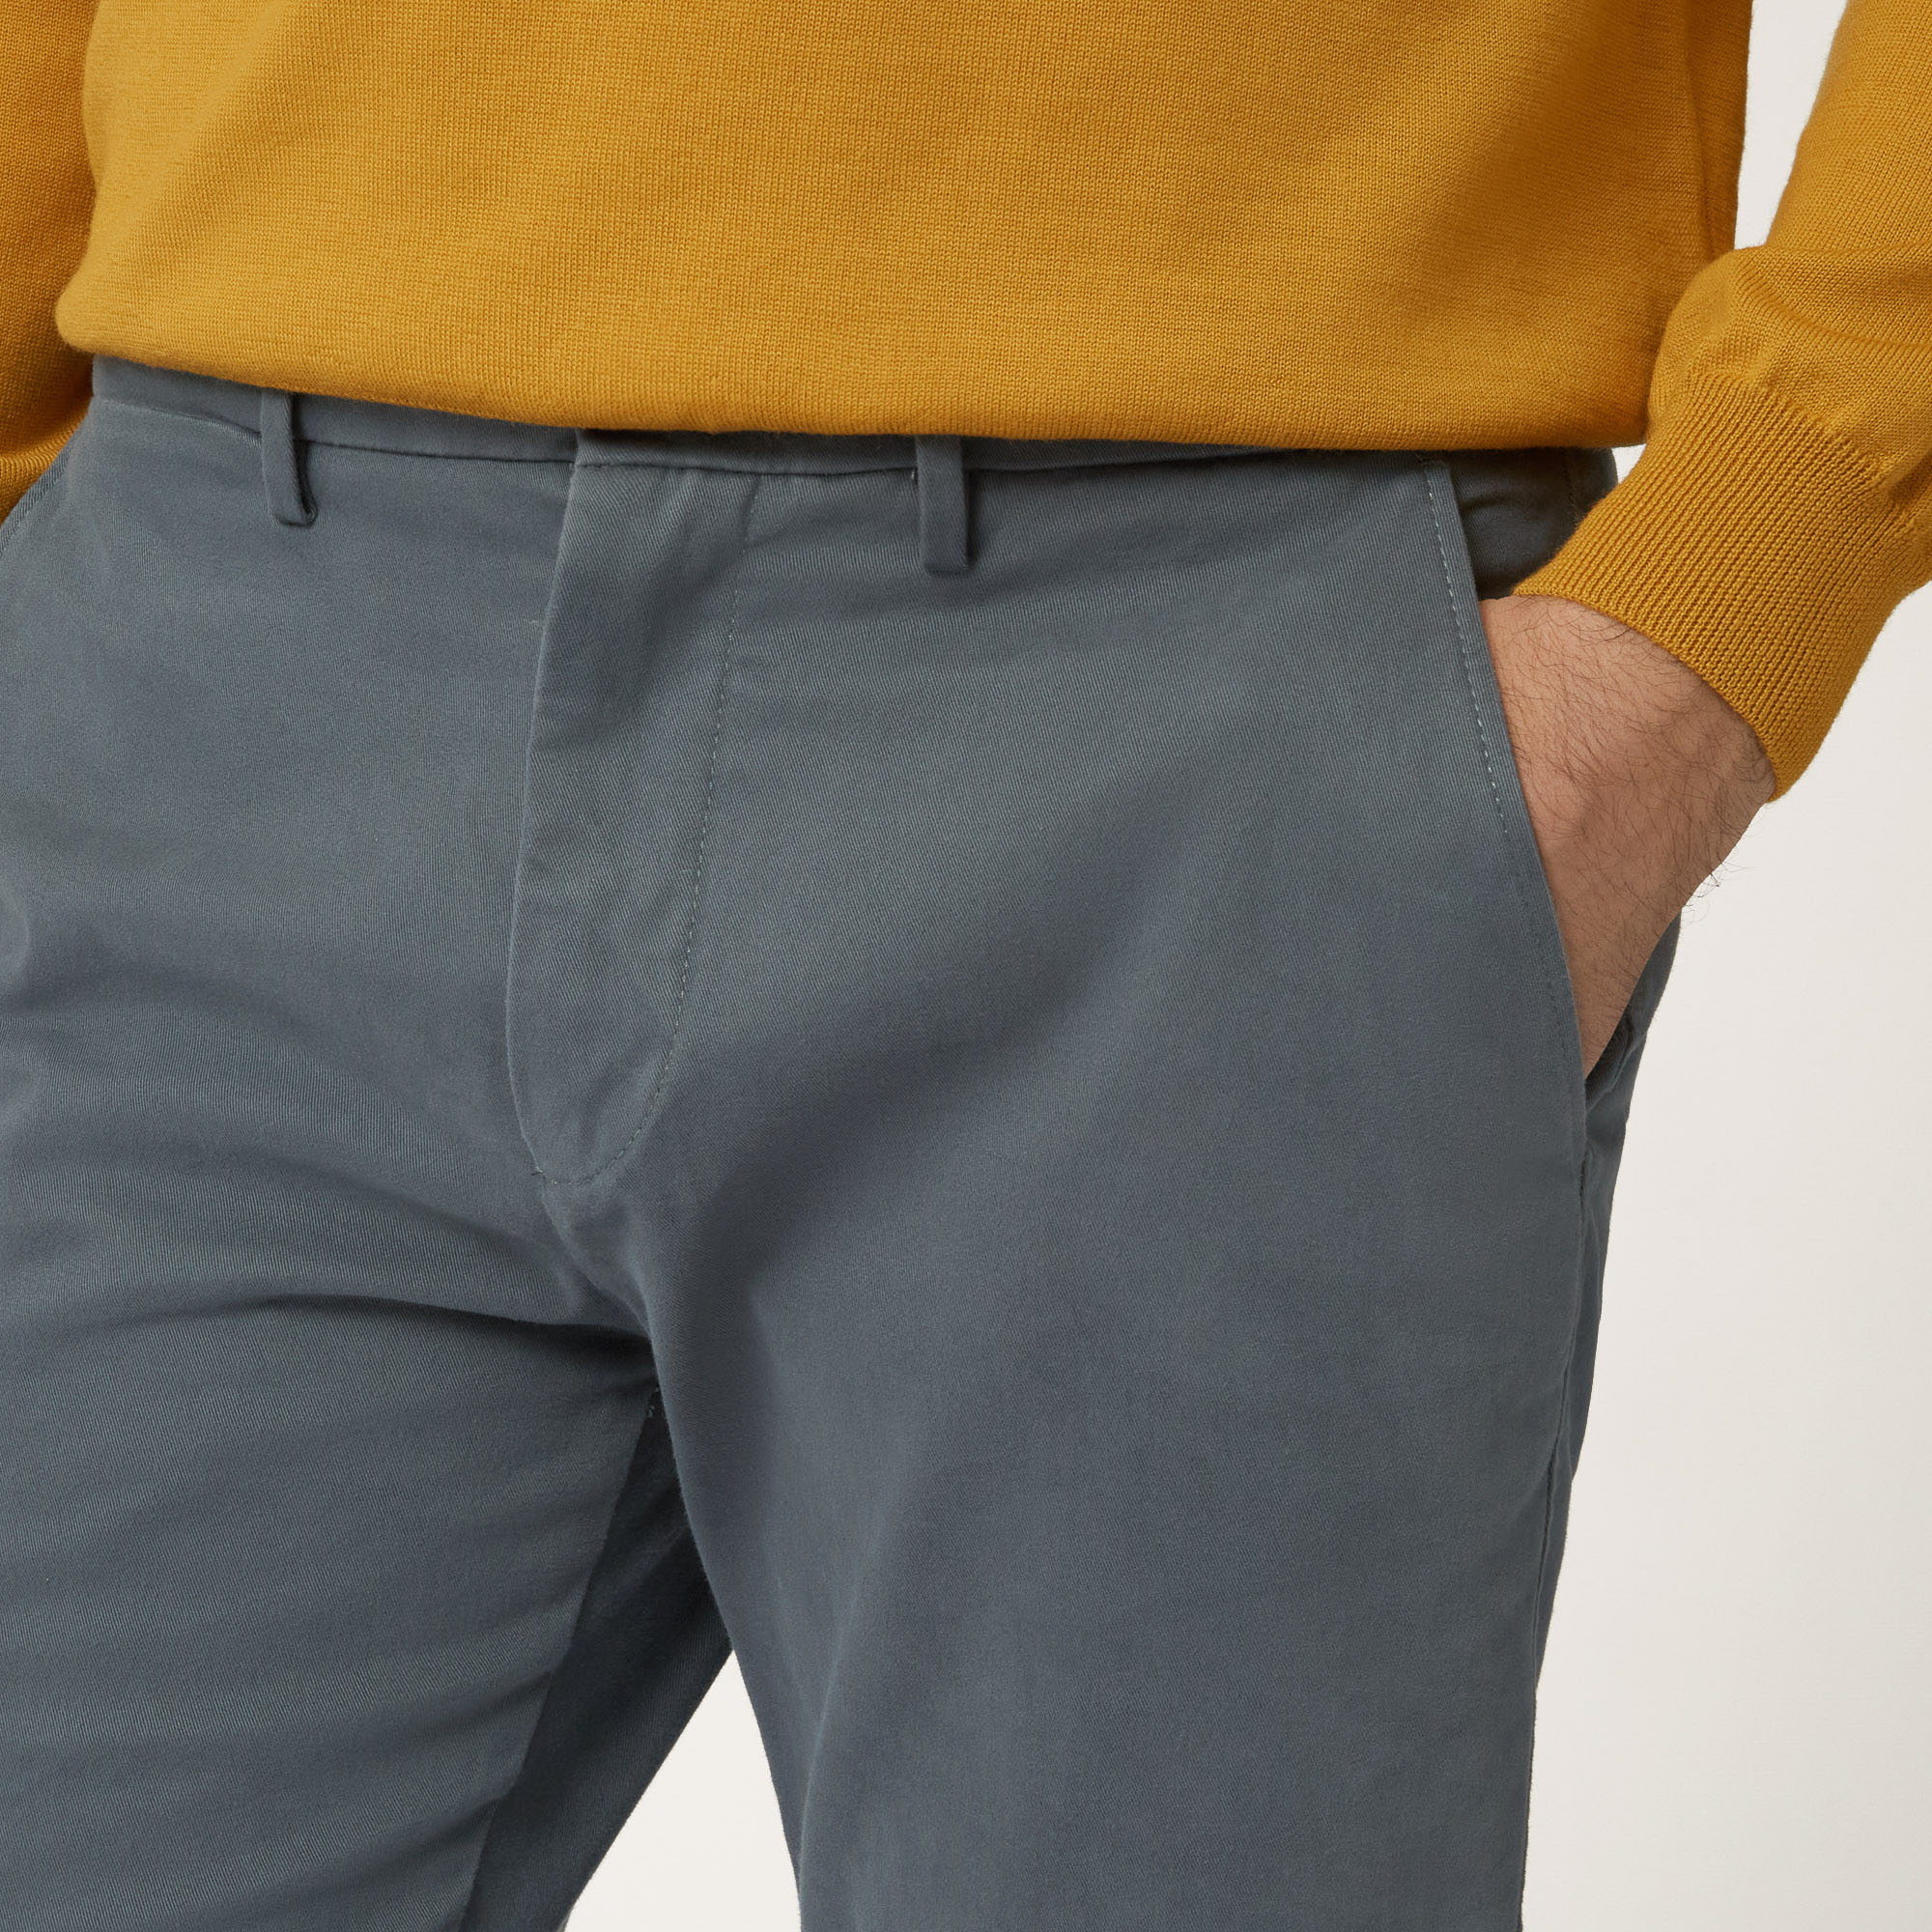 Pantalone Chino In Cotone Stretch Progetto Prisma, Grigio, large